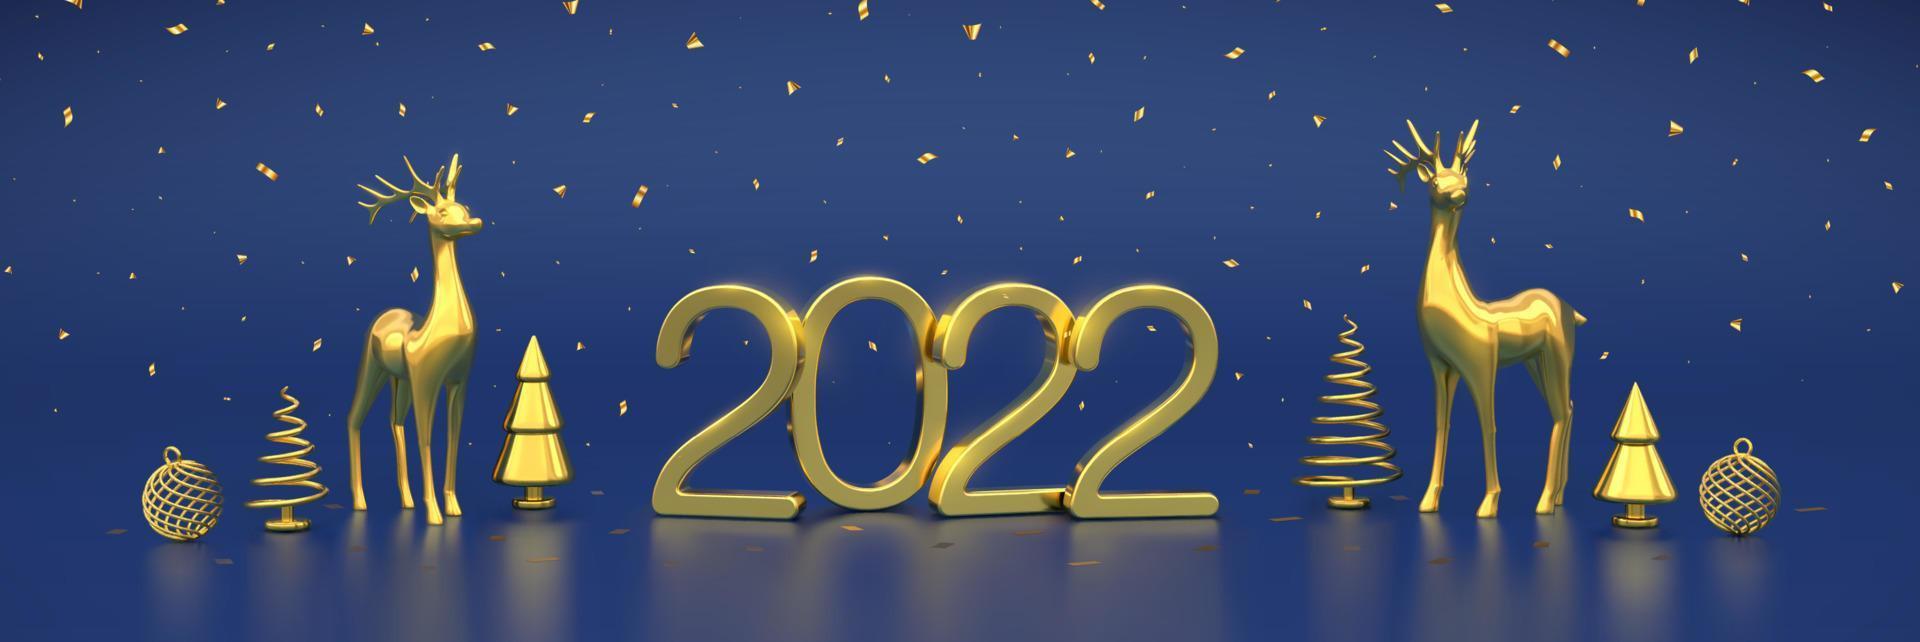 feliz año nuevo 2022. números metálicos dorados 2022 con ciervos dorados, cajas de regalo, pino o abeto metálico dorado, abetos en forma de cono, bolas brillantes y confeti sobre fondo azul. ilustración vectorial. vector